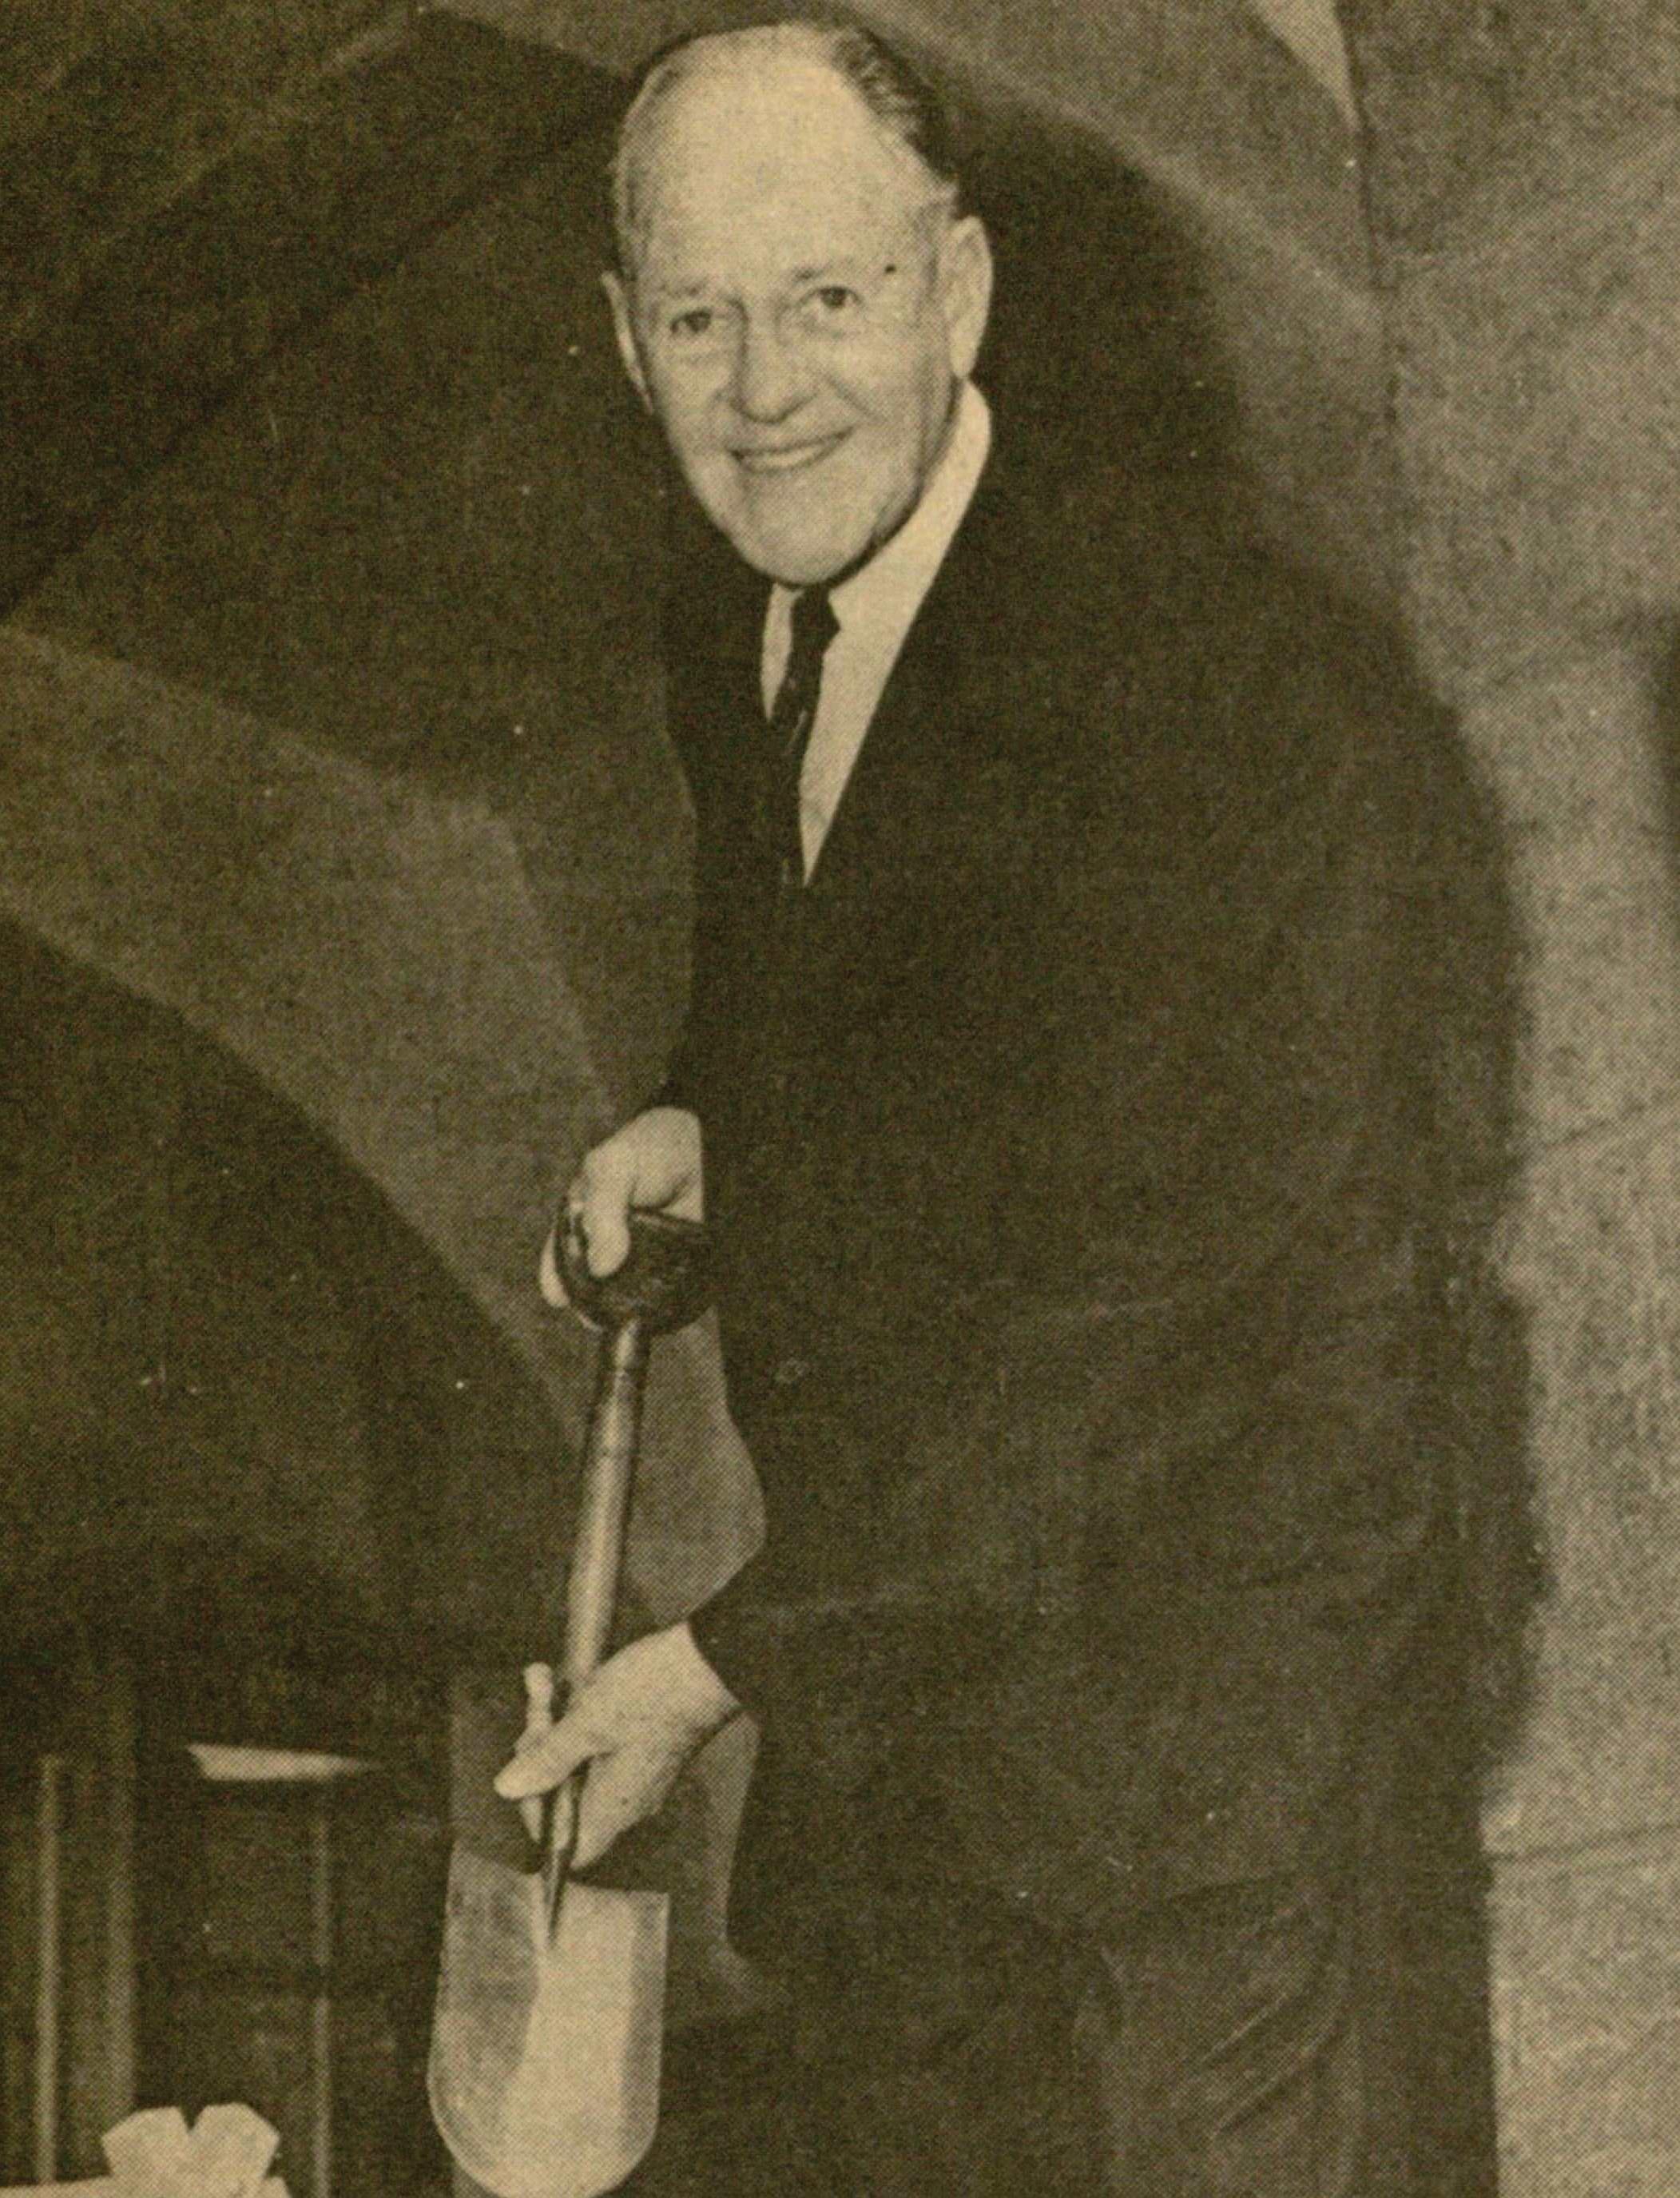 Alvin Morrison with the shovel